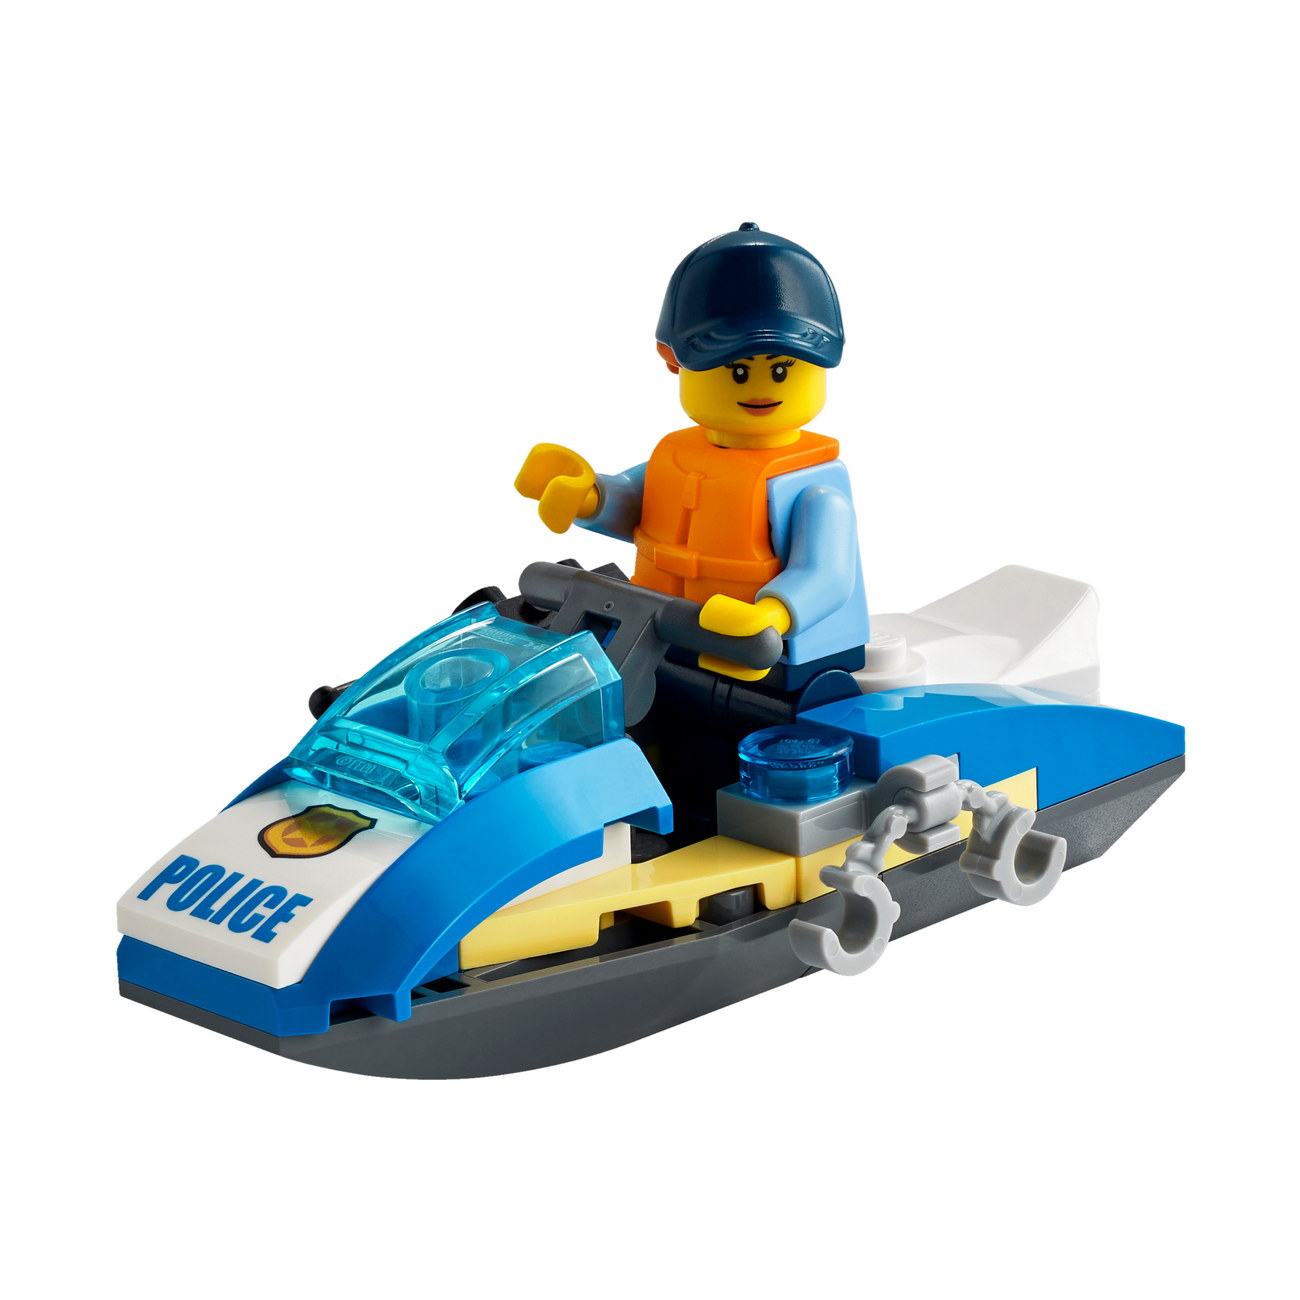 LEGO City 30567 - Polizei Jetski